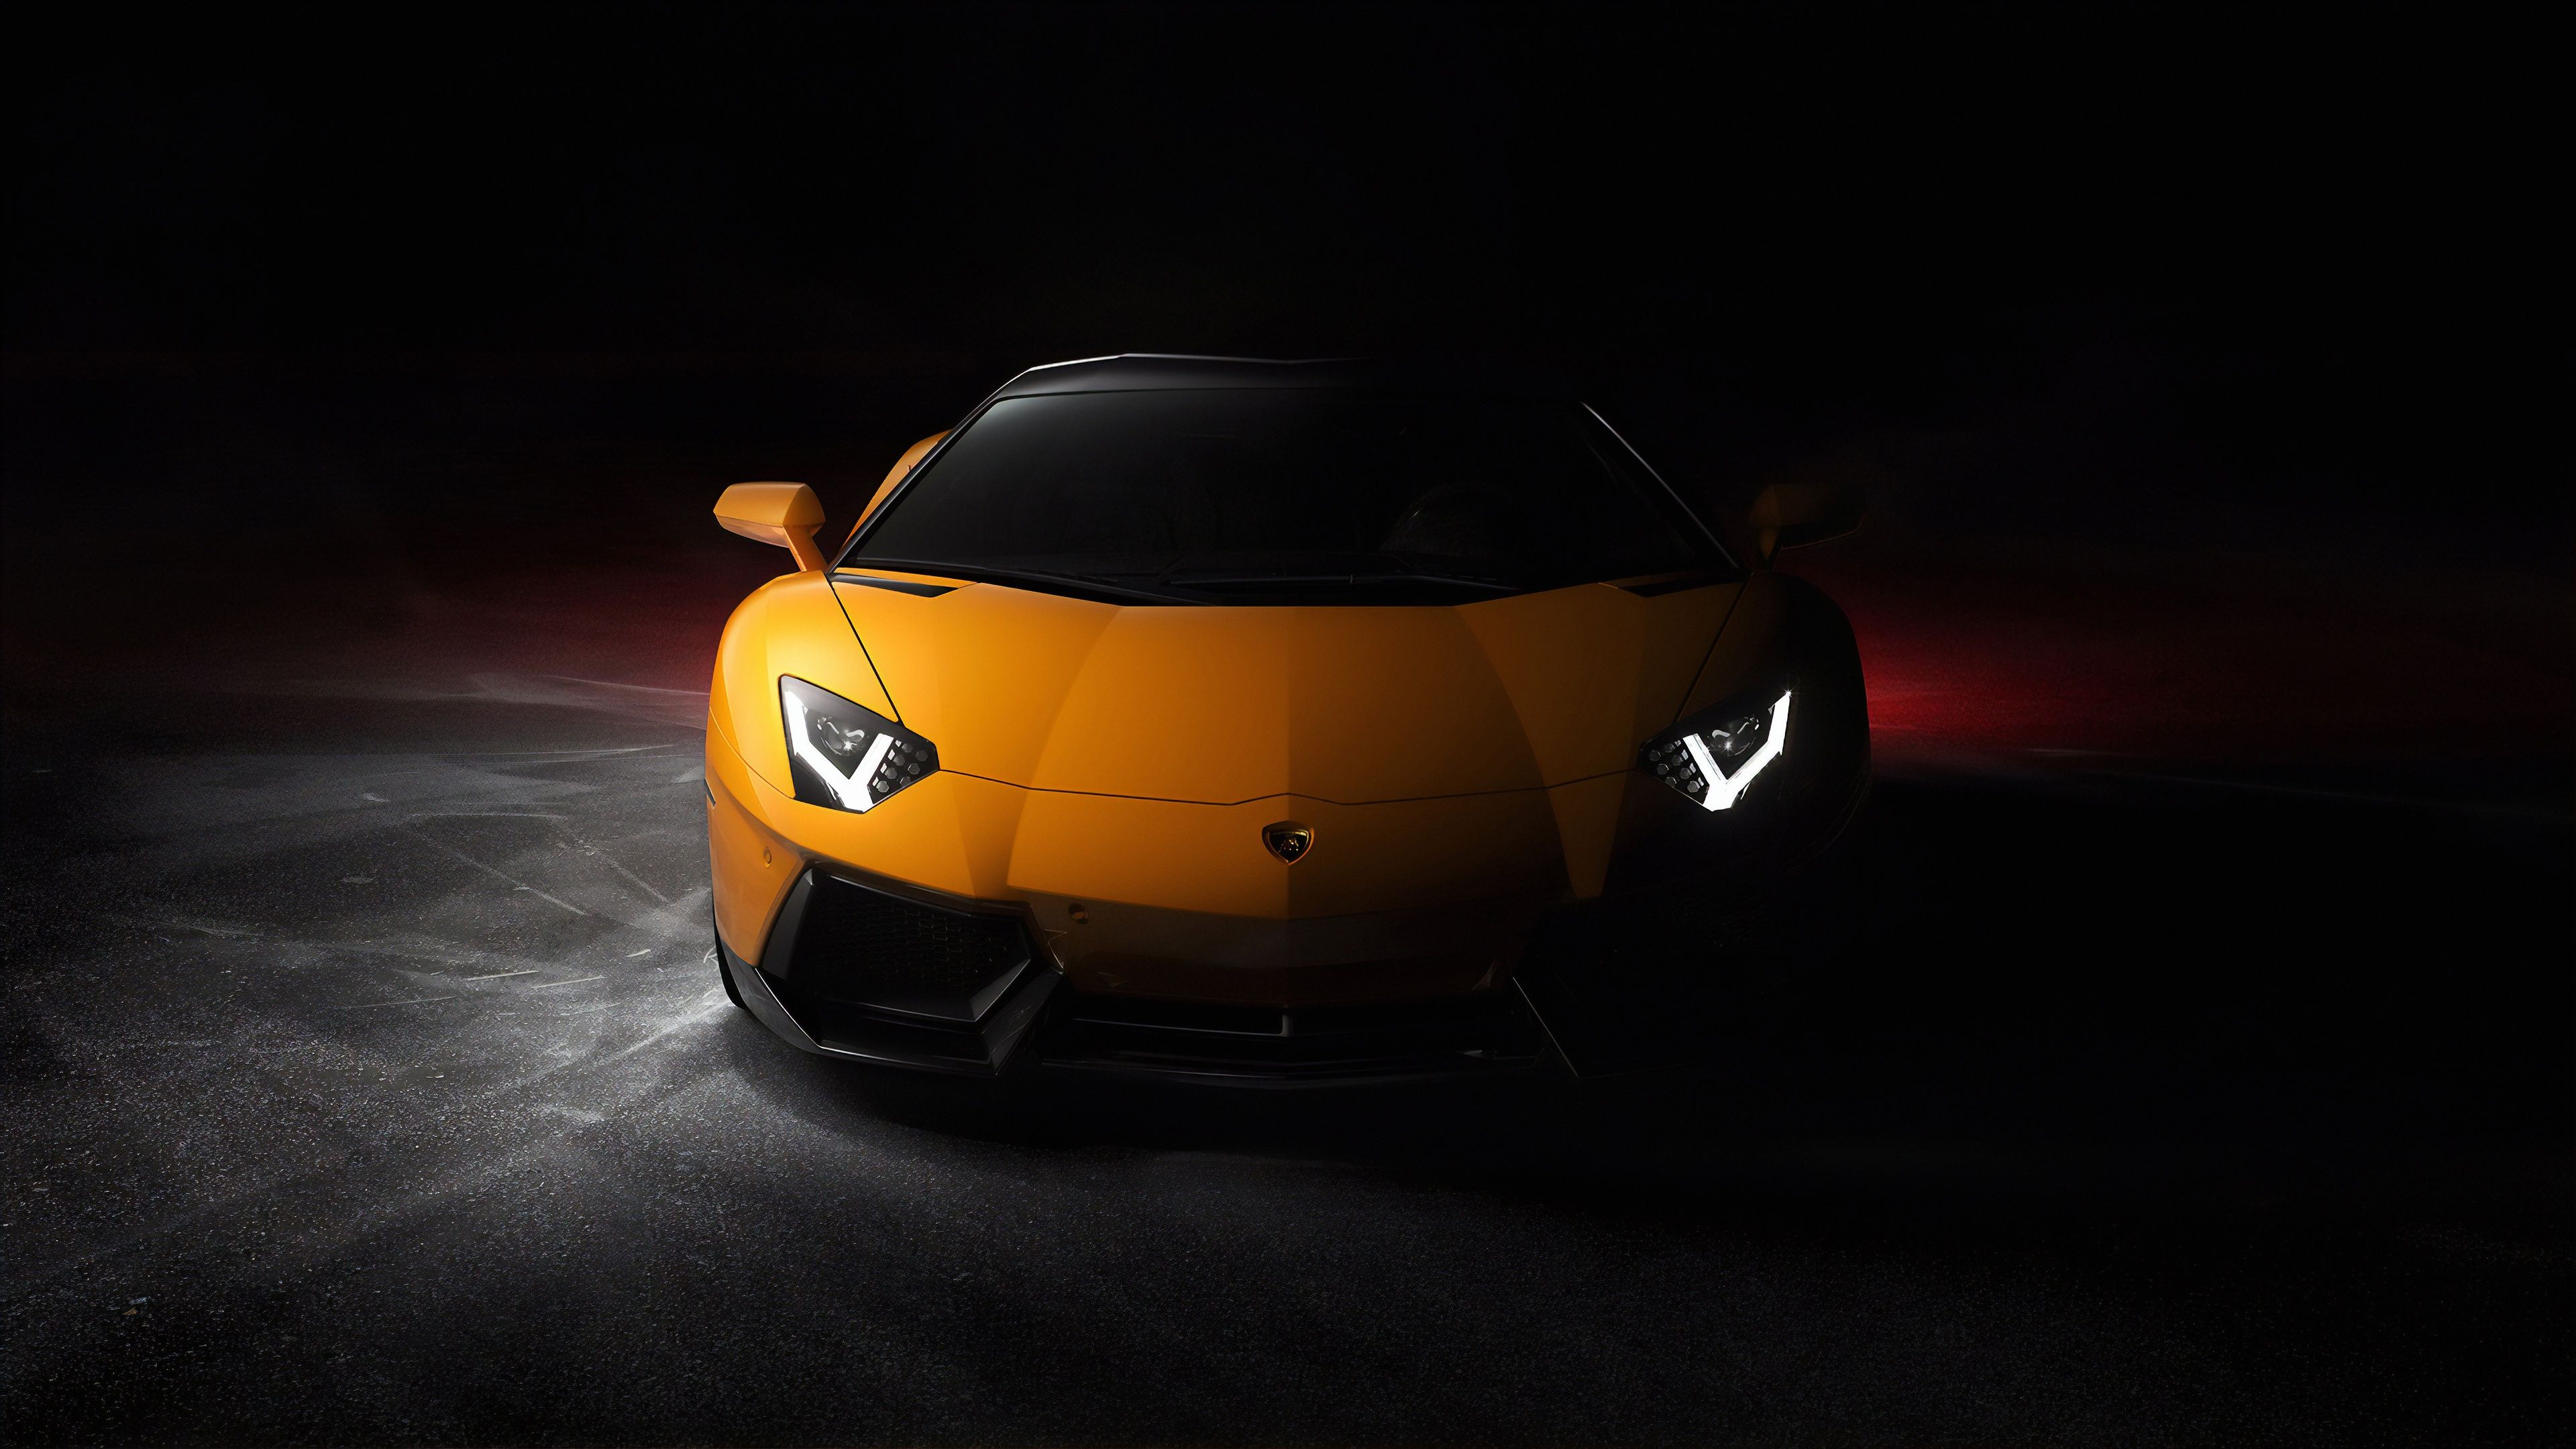 Lamborghini Aventador 4K Wallpaper, Sports cars, Black background, Cars